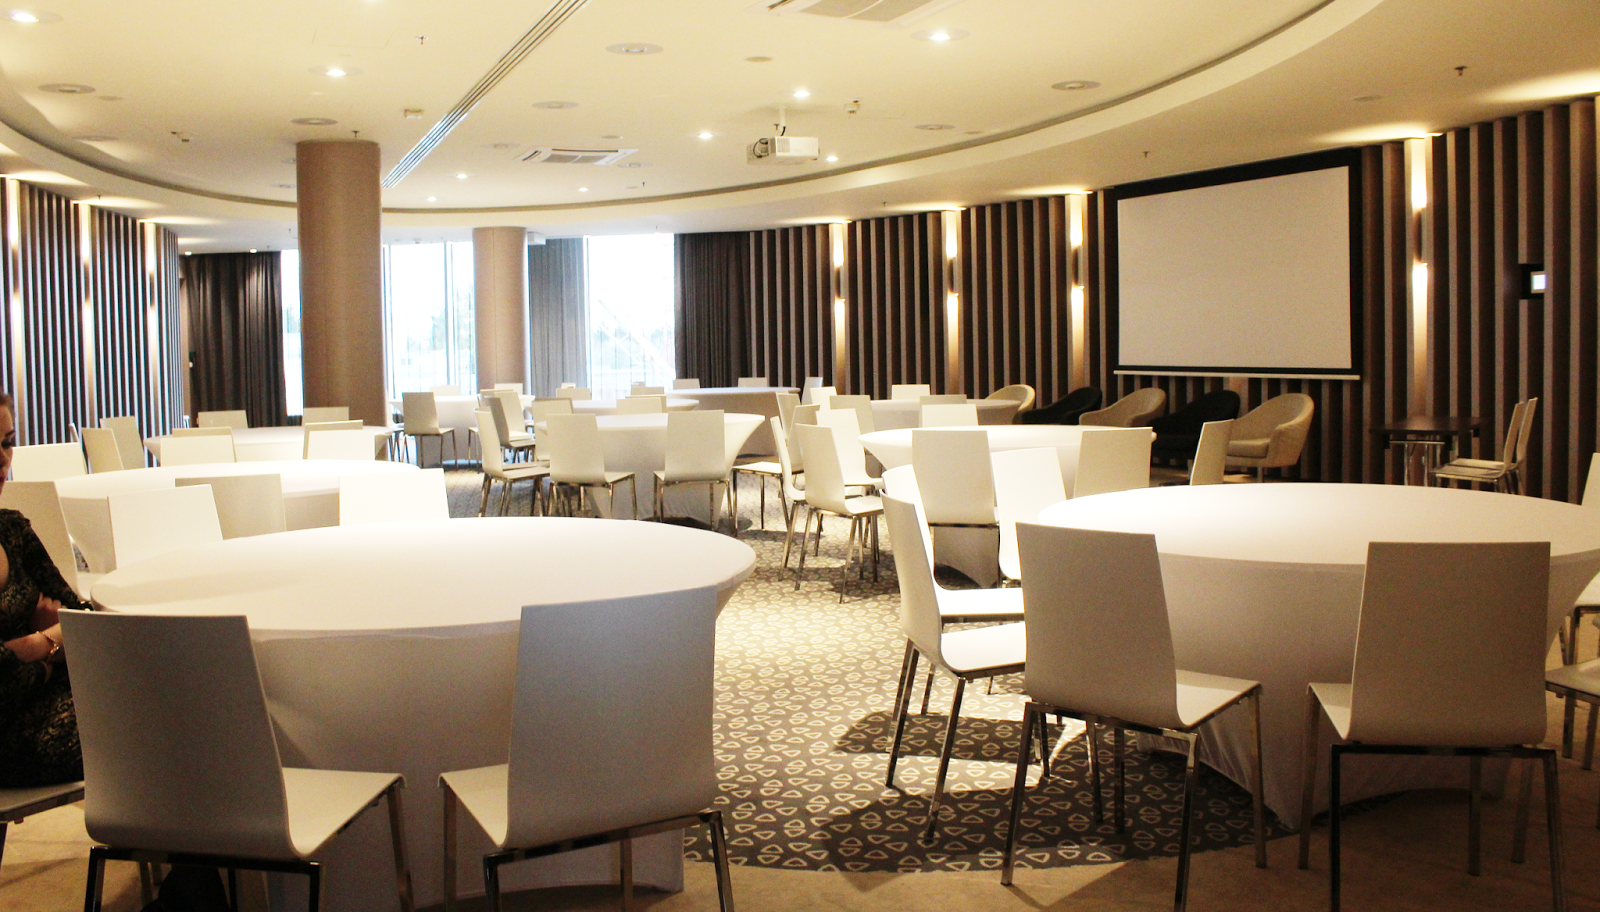 okrągły stół, białe krzesła w sali konferencyjnej,designerskie wnętrze hotelu